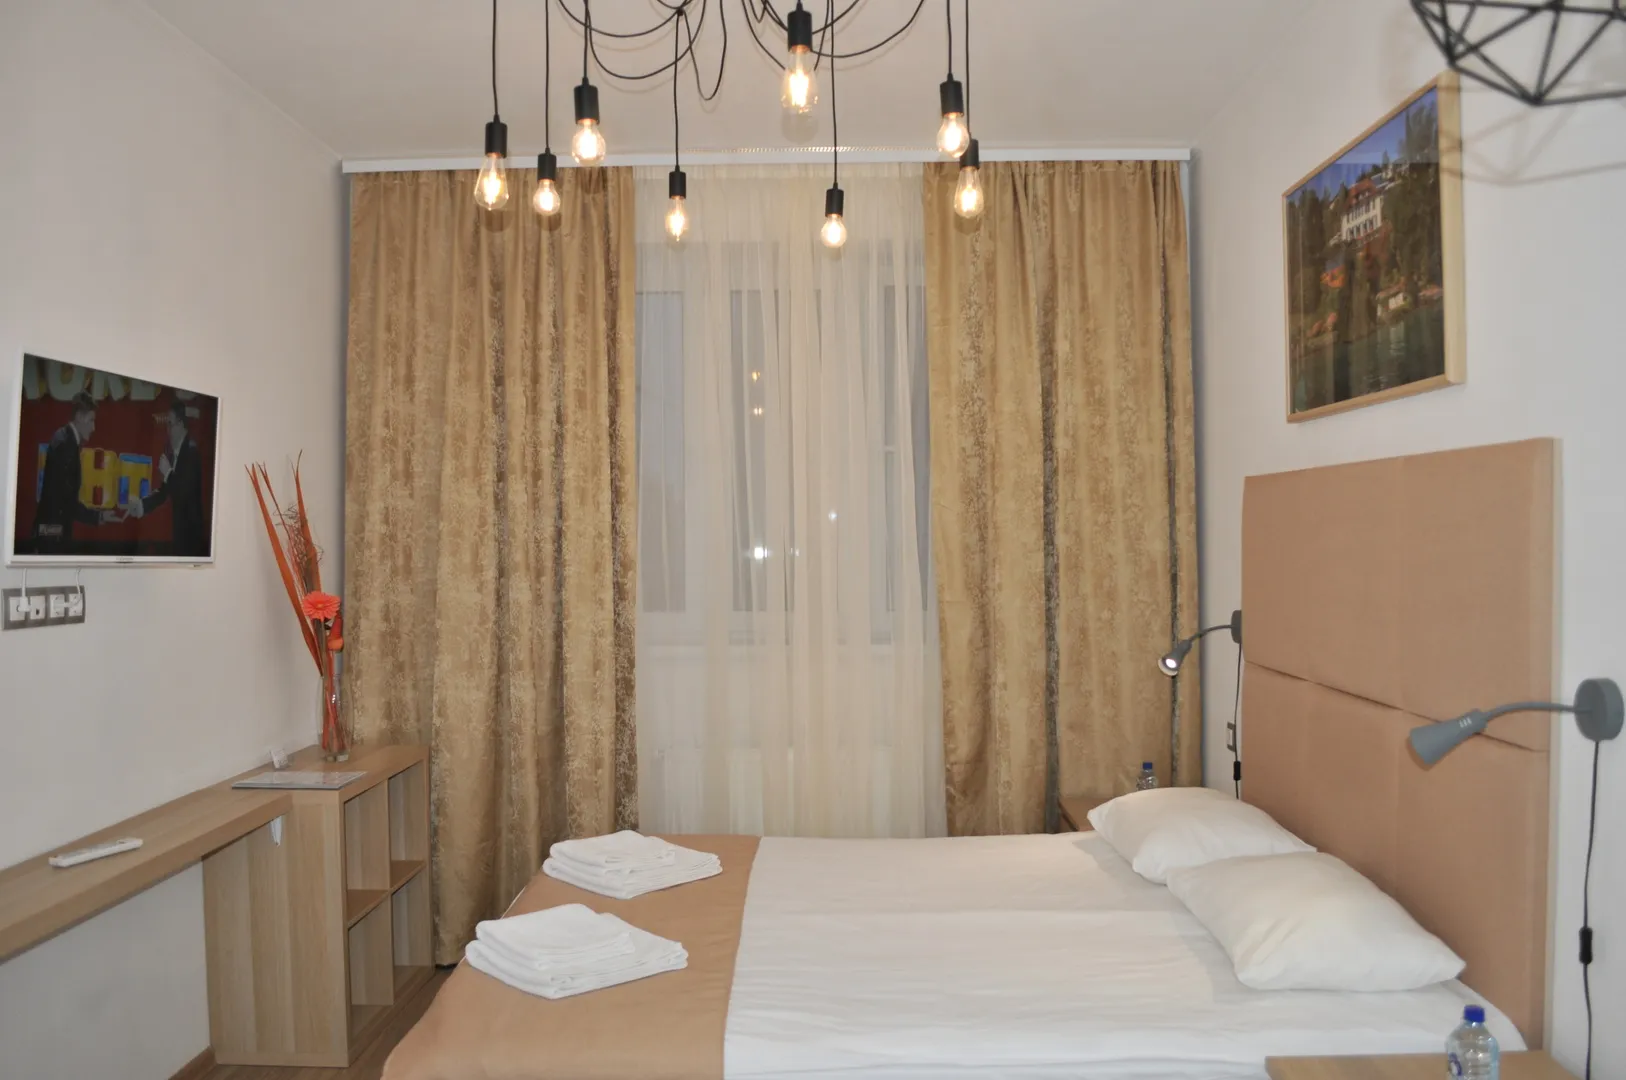 Большая двуспальная кровать, наборы полотенец для каждого гостя, одноразовые тапочки, LCD TV, Wi-Fi и проводной Интернет